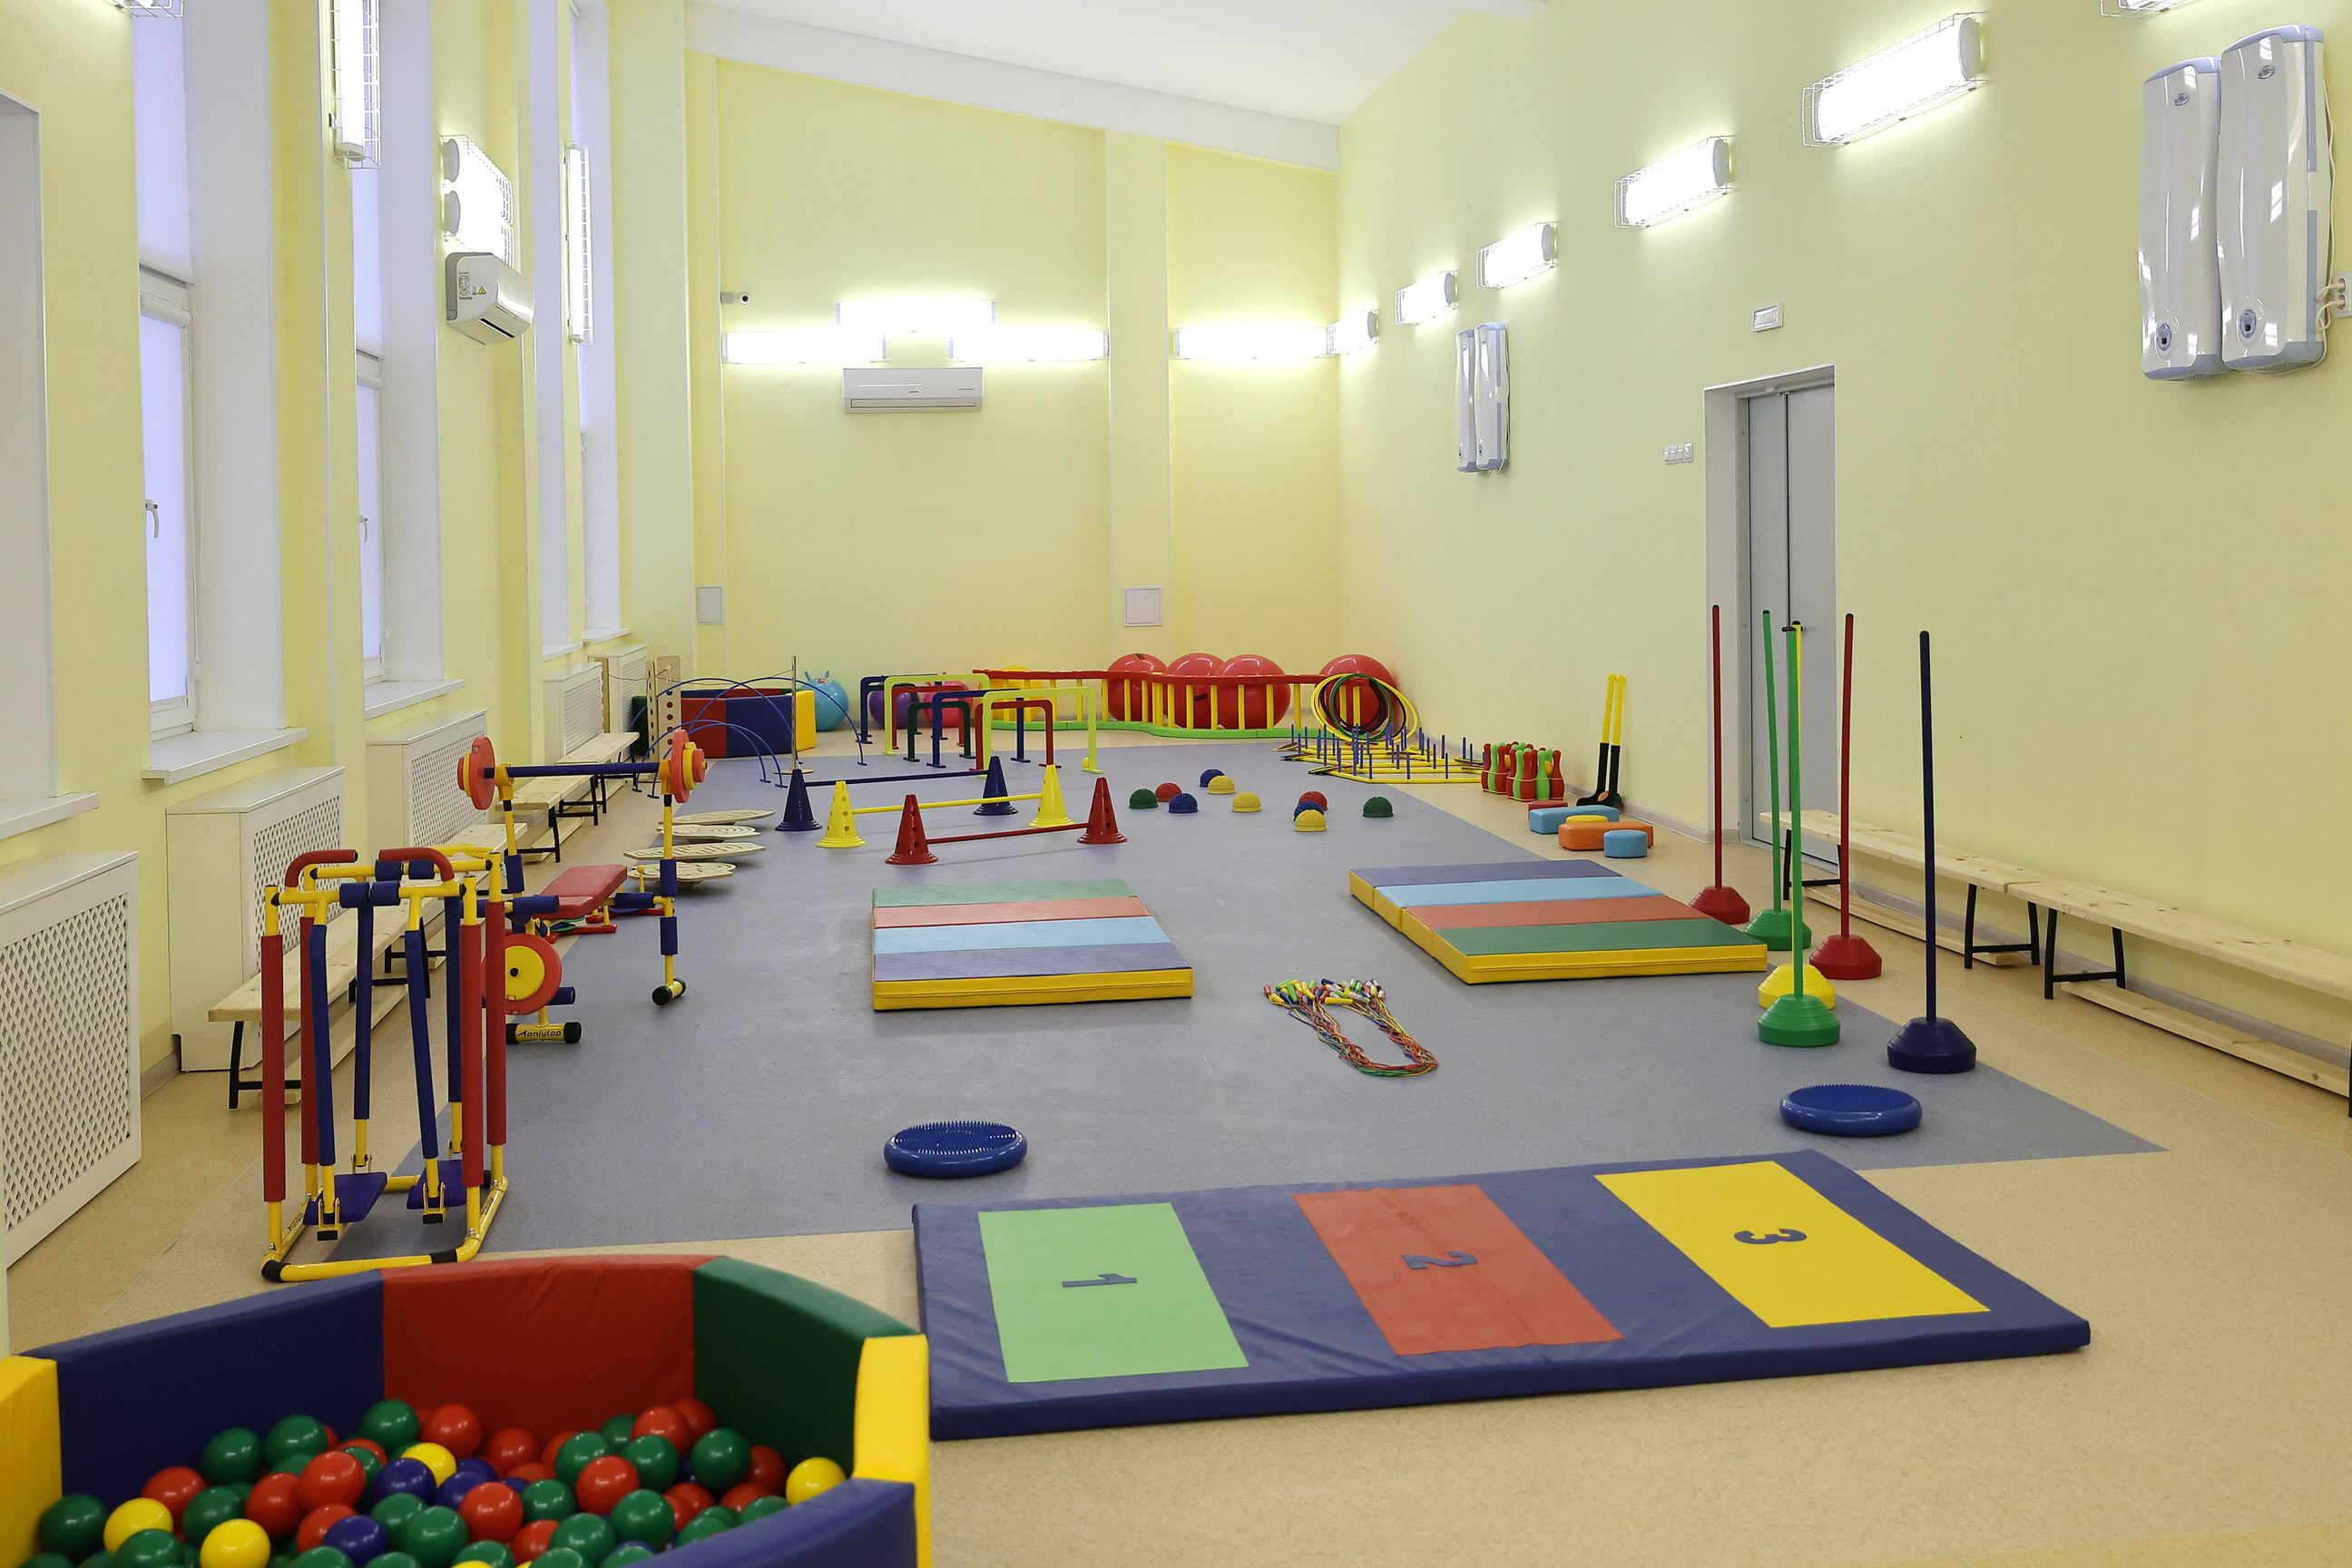 Новый детский сад, построенный группой компаний «ЮгСтройИнвест», открылся в Краснодаре